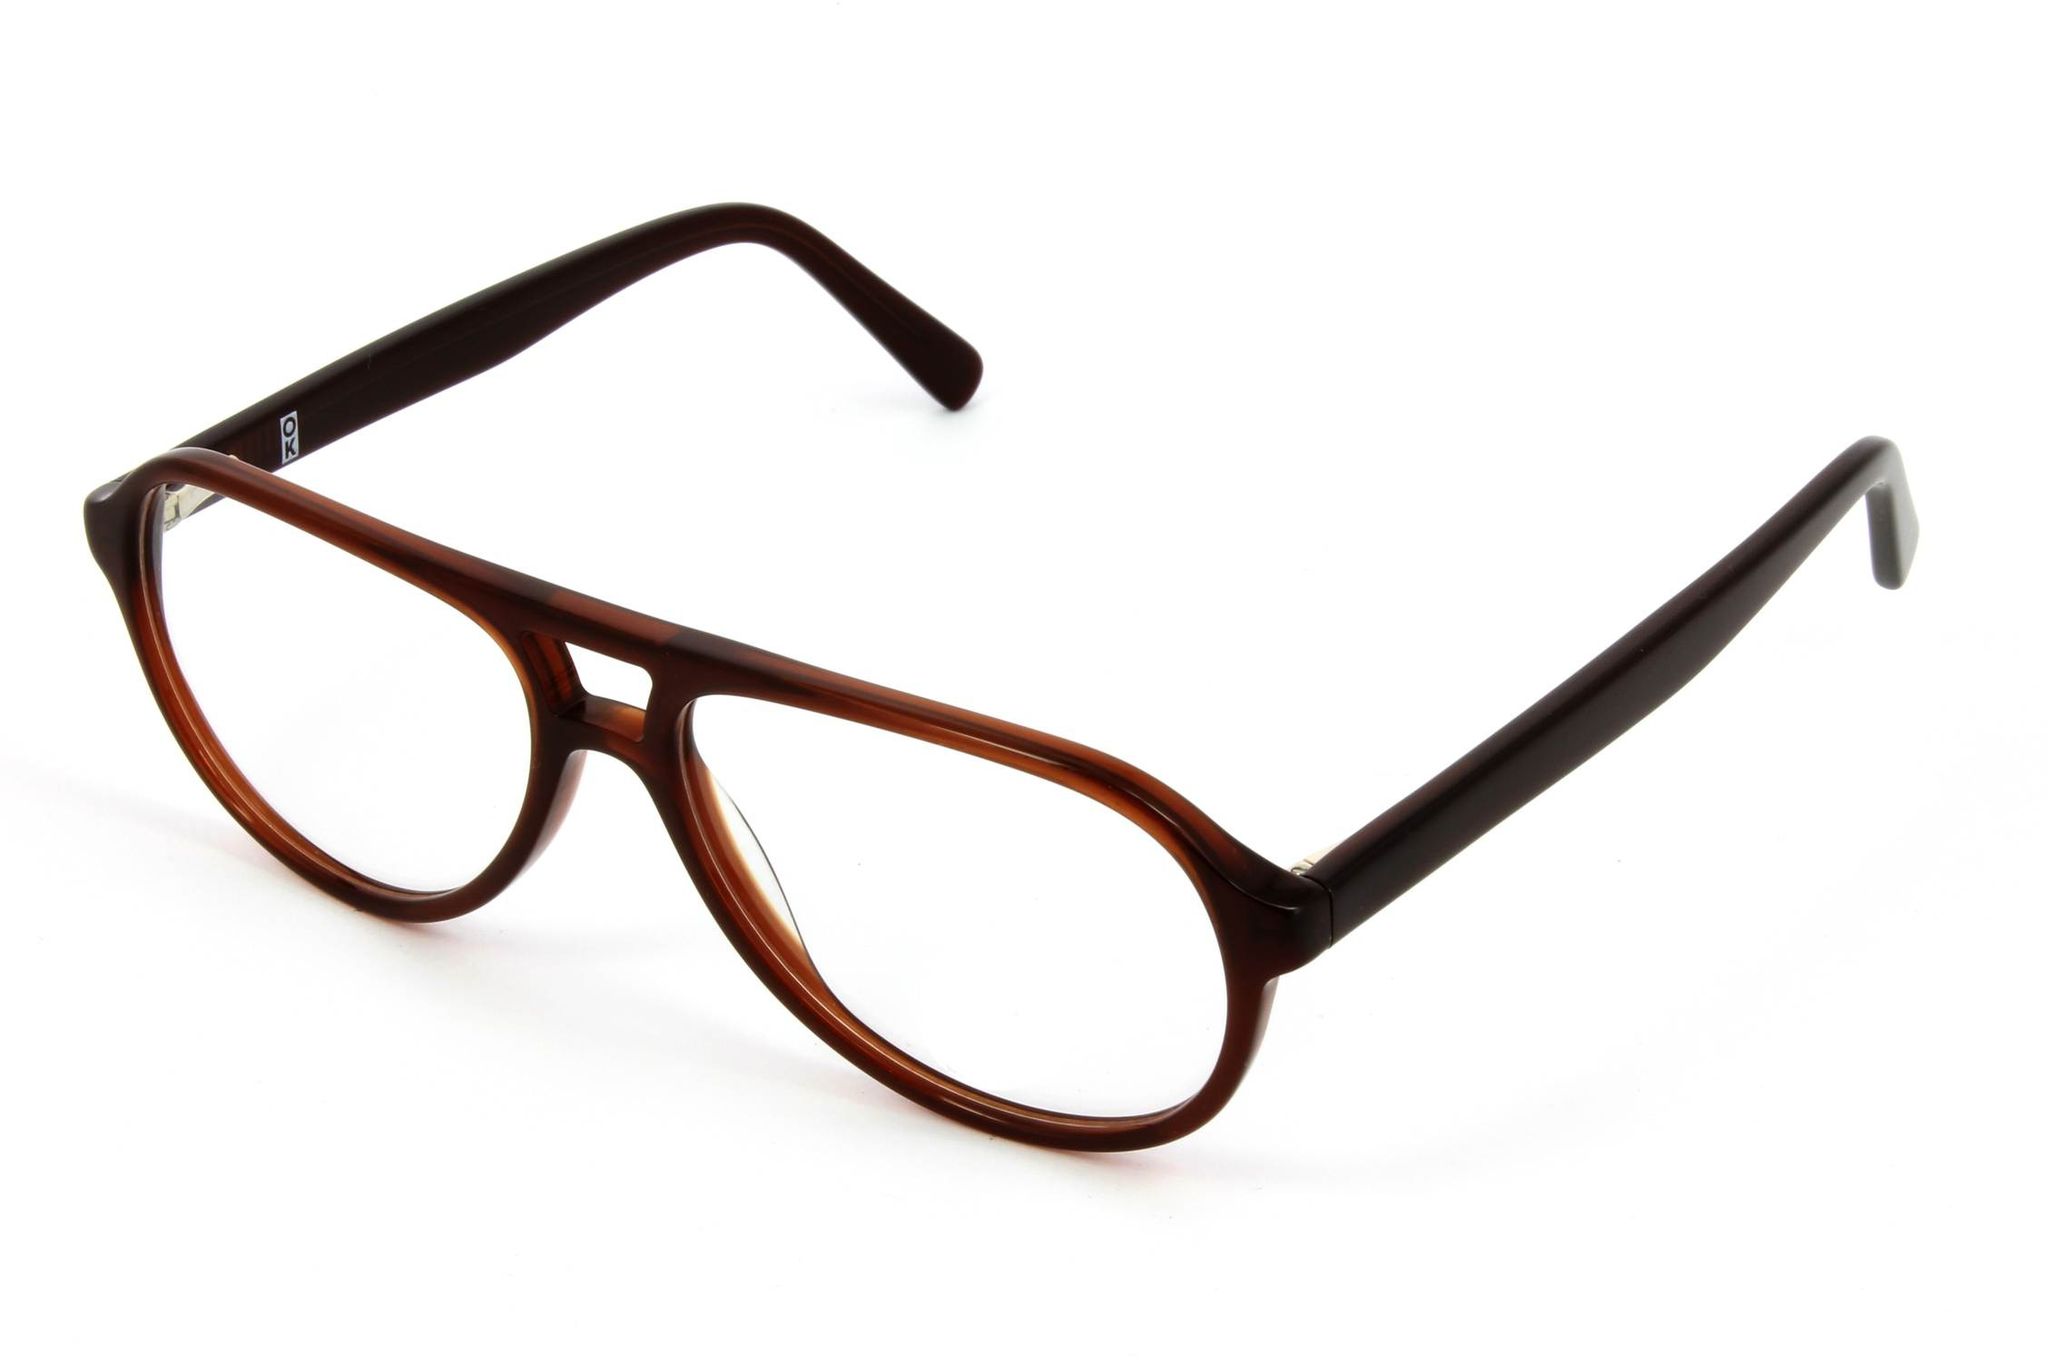 Comment bien choisir ses montures de lunettes? – L'Express